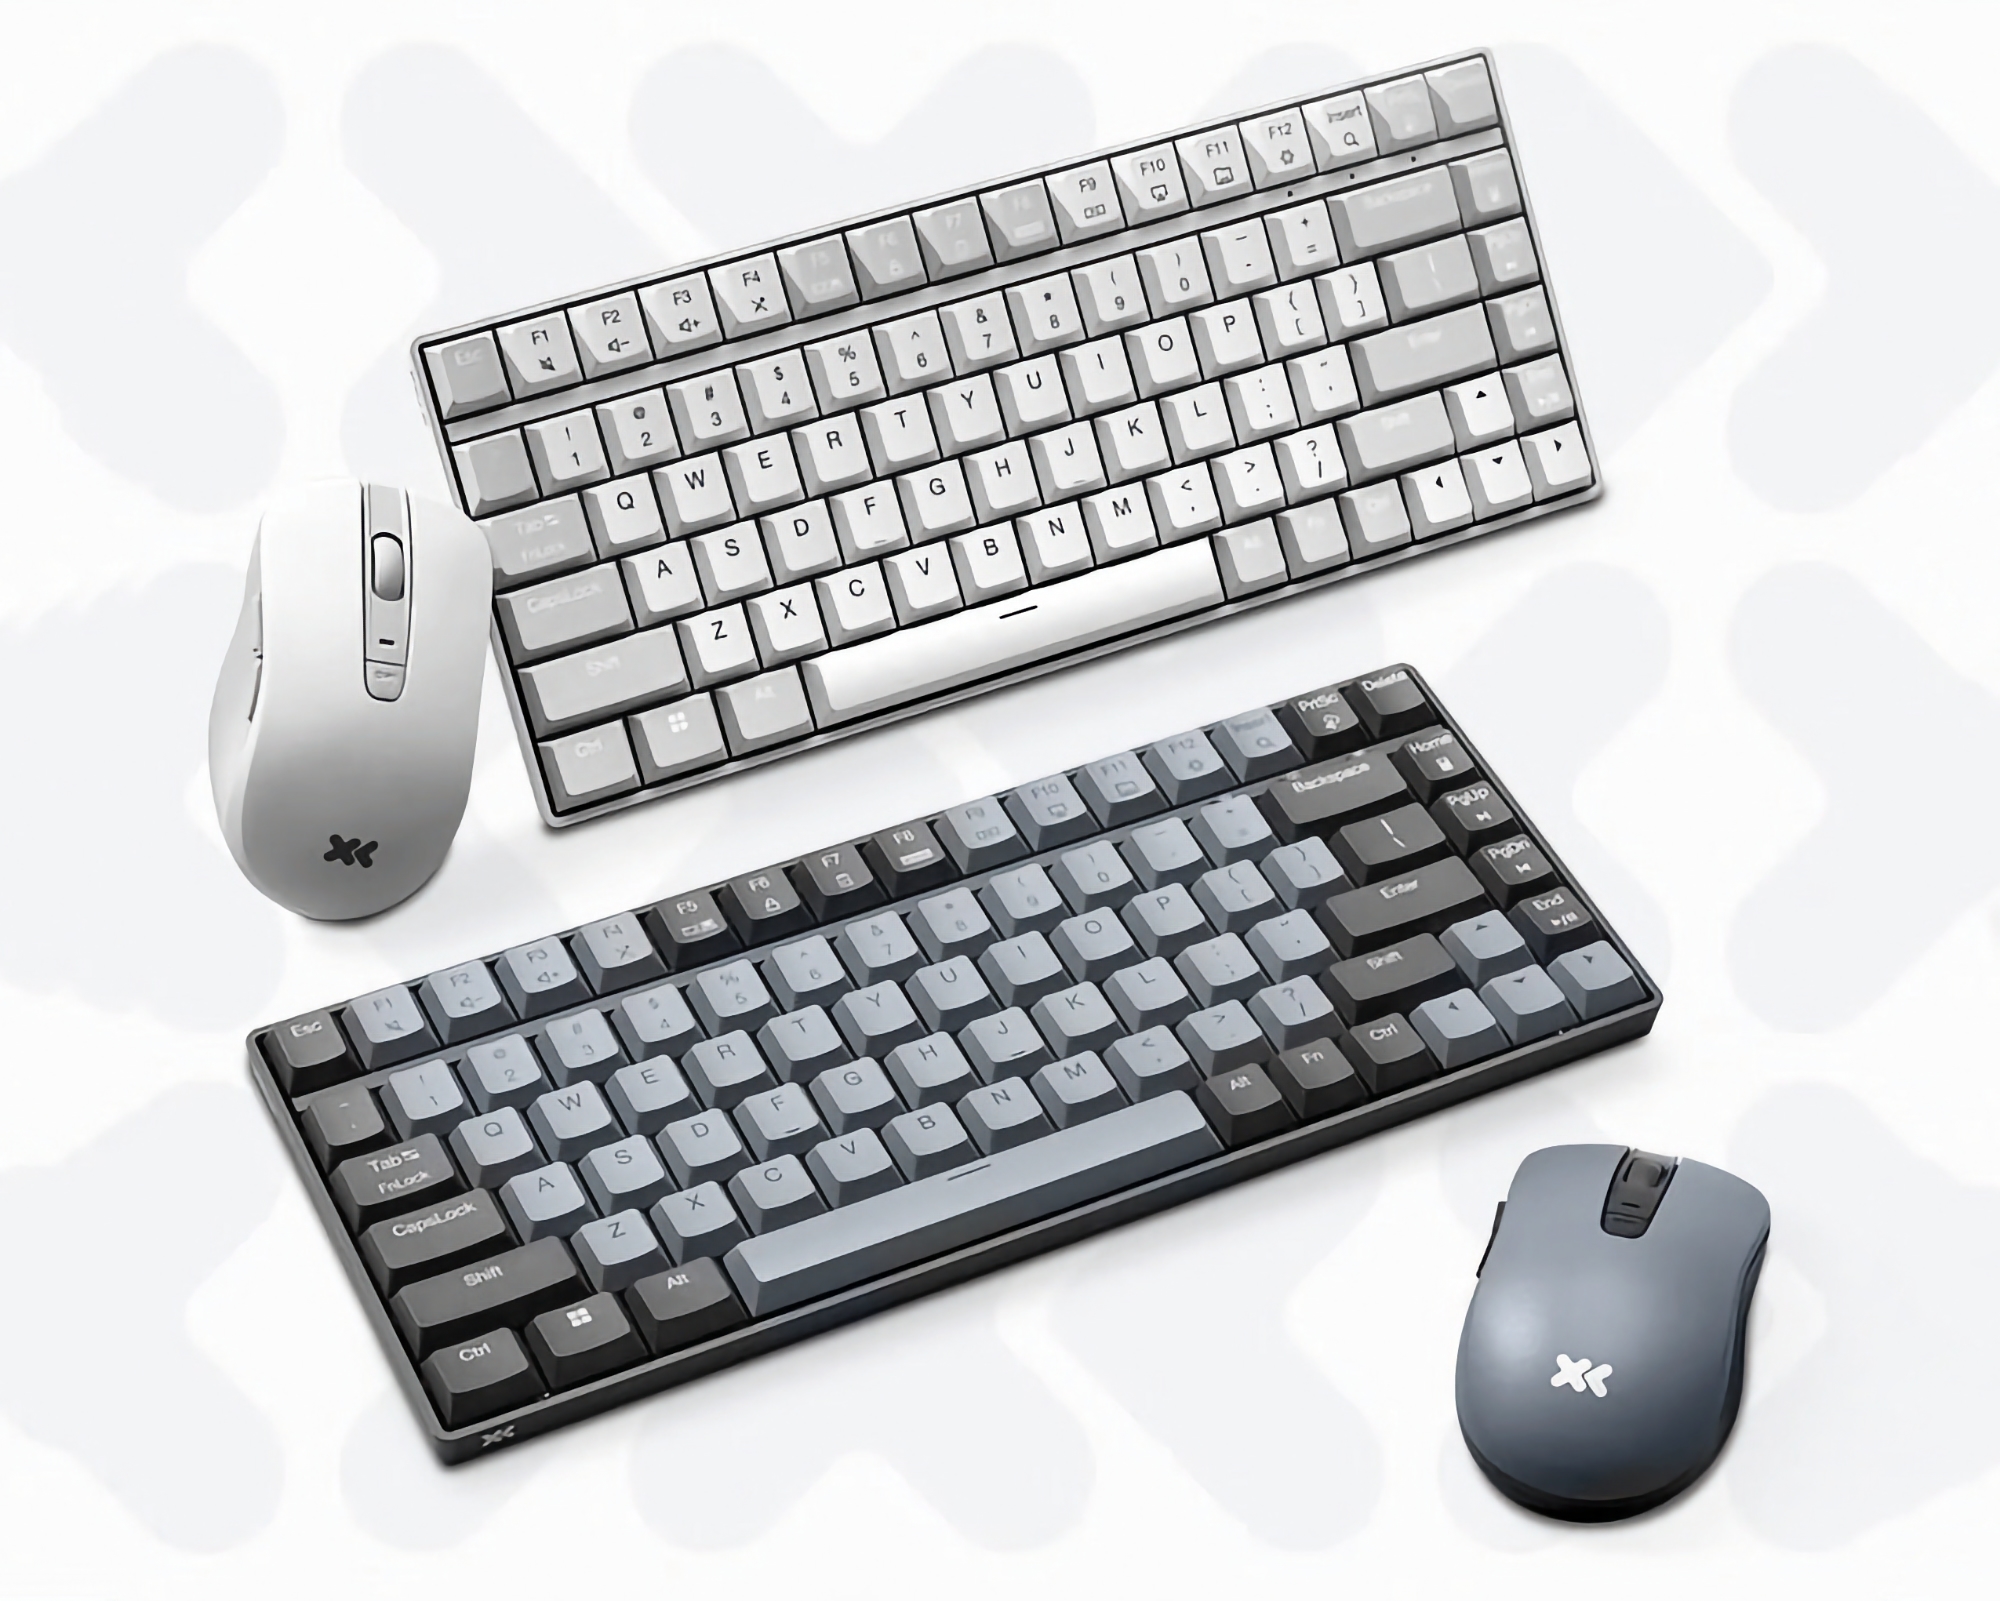 Kit économique : Lenovo dévoile un clavier et une souris sans fil à 21 dollars